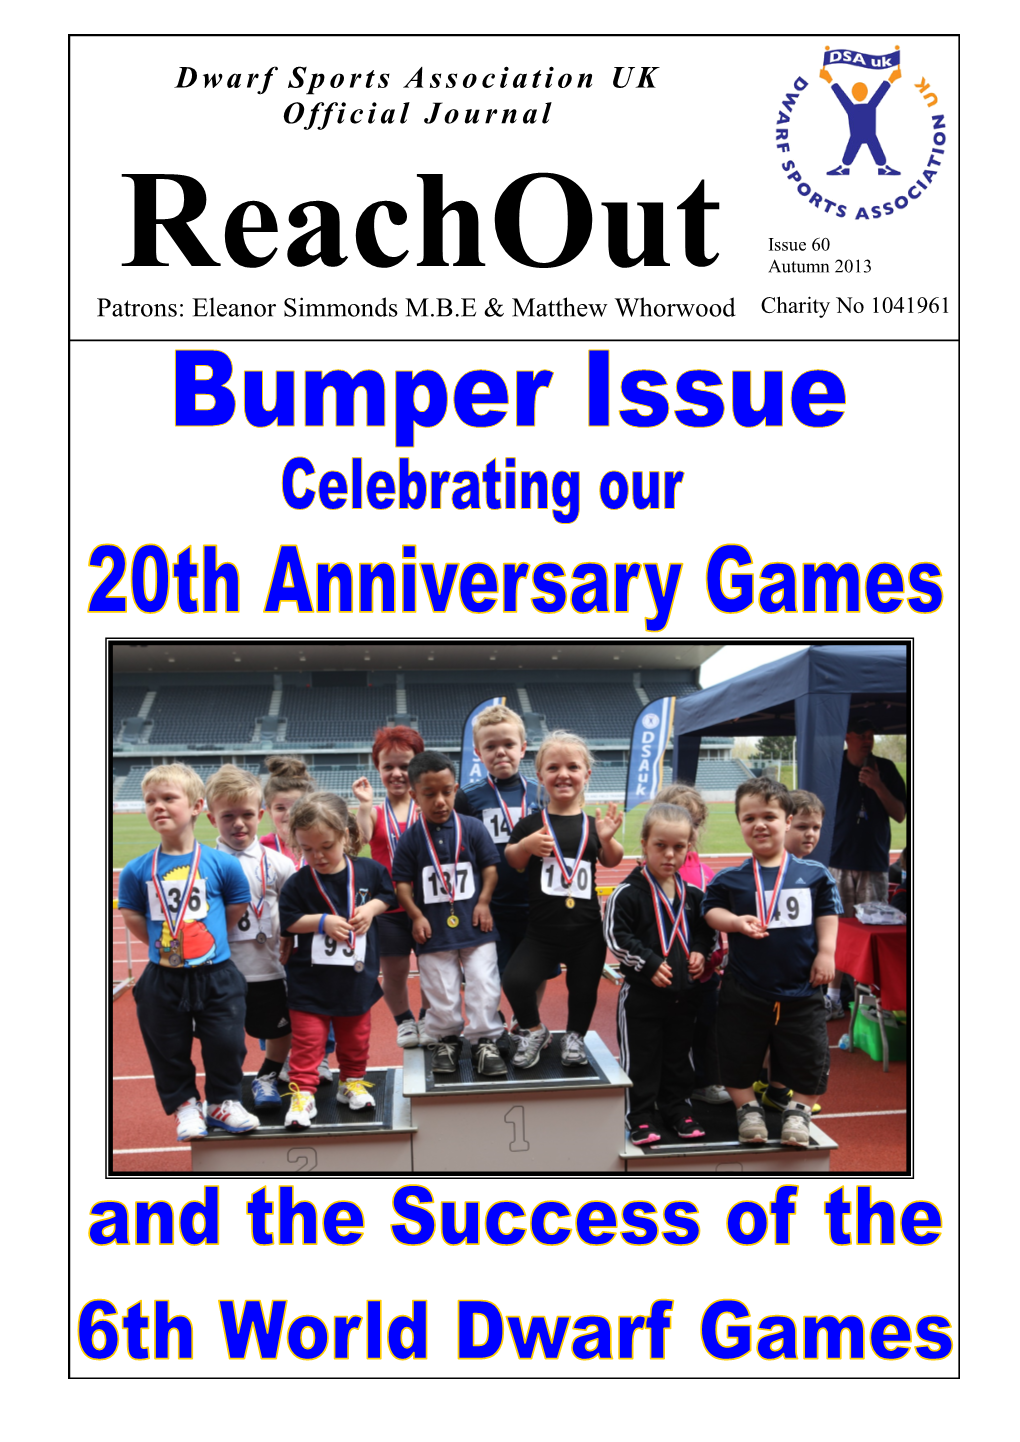 Dwarf Sports Association UK Official Journal